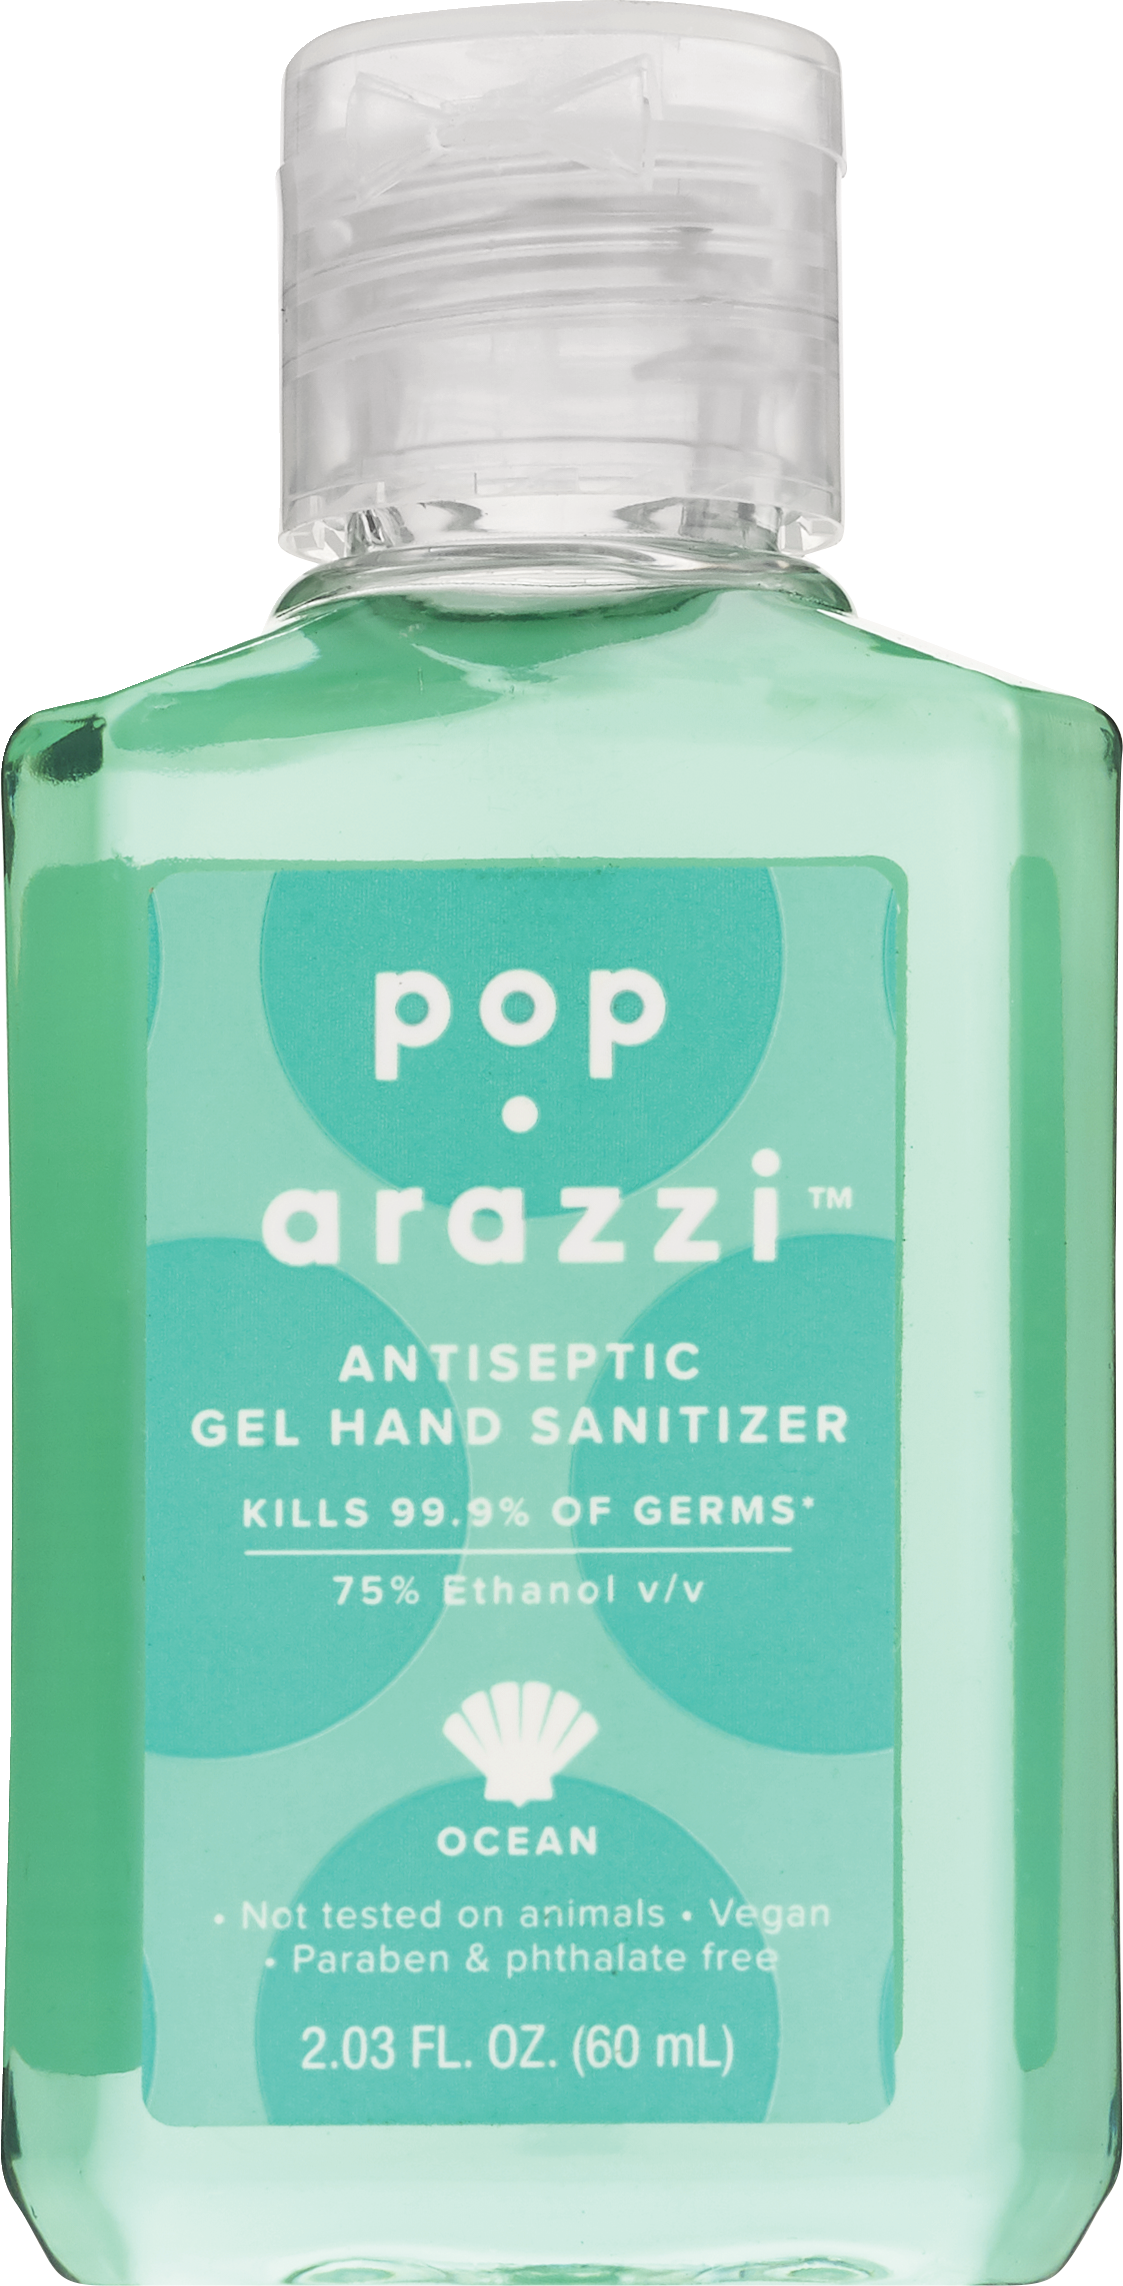 Pop-arazzi - Desinfectante para manos en gel, tamaño de viaje, 2.03 oz